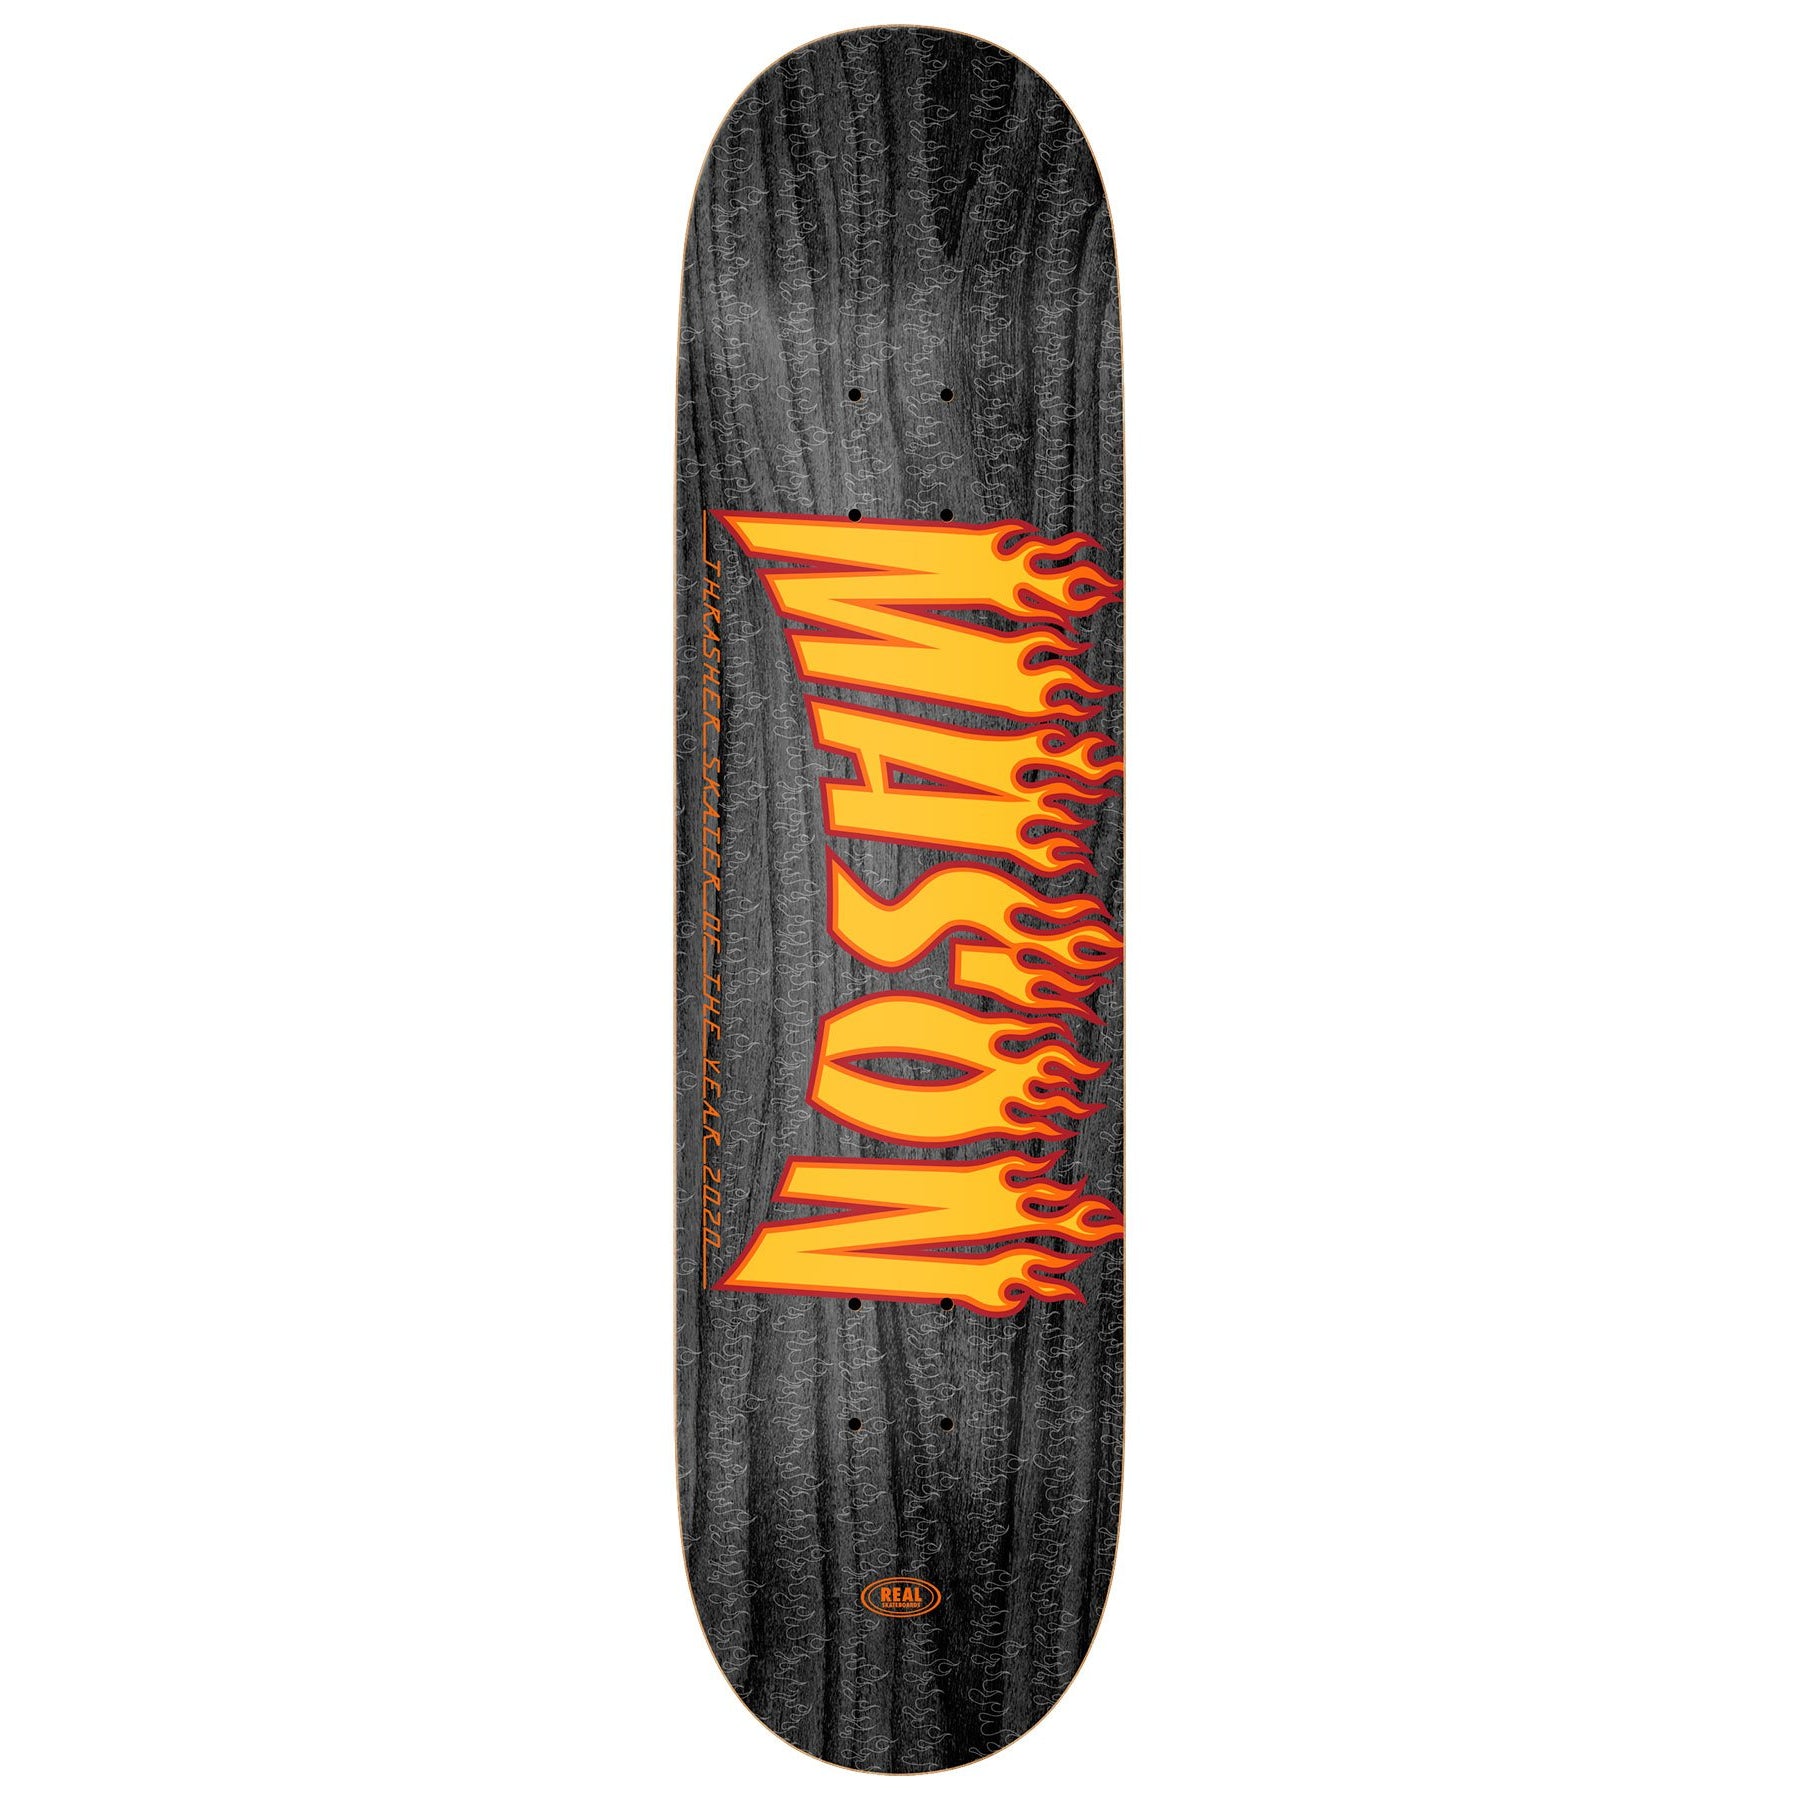 Mason Silva SOTY Real Skateboard Deck